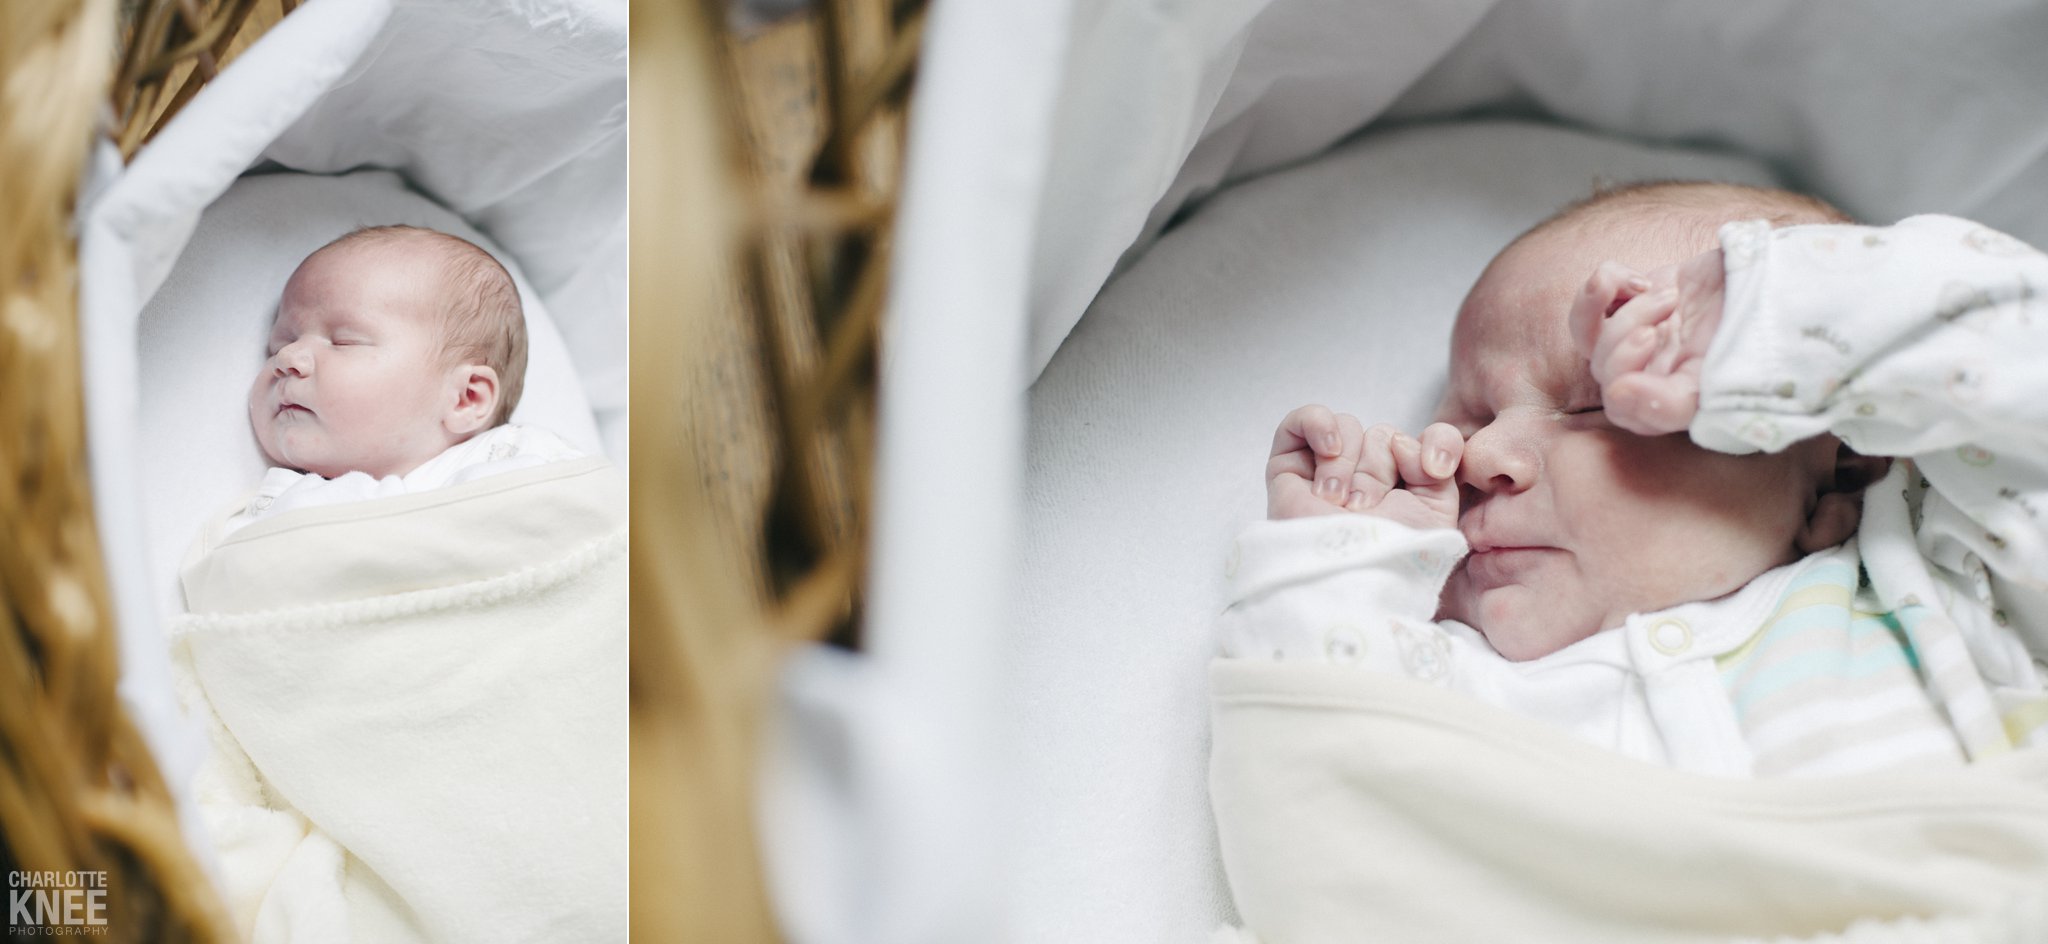 Newborn-Photography-Baby-Jamie-Charlotte-Knee-Photography_0008.jpg